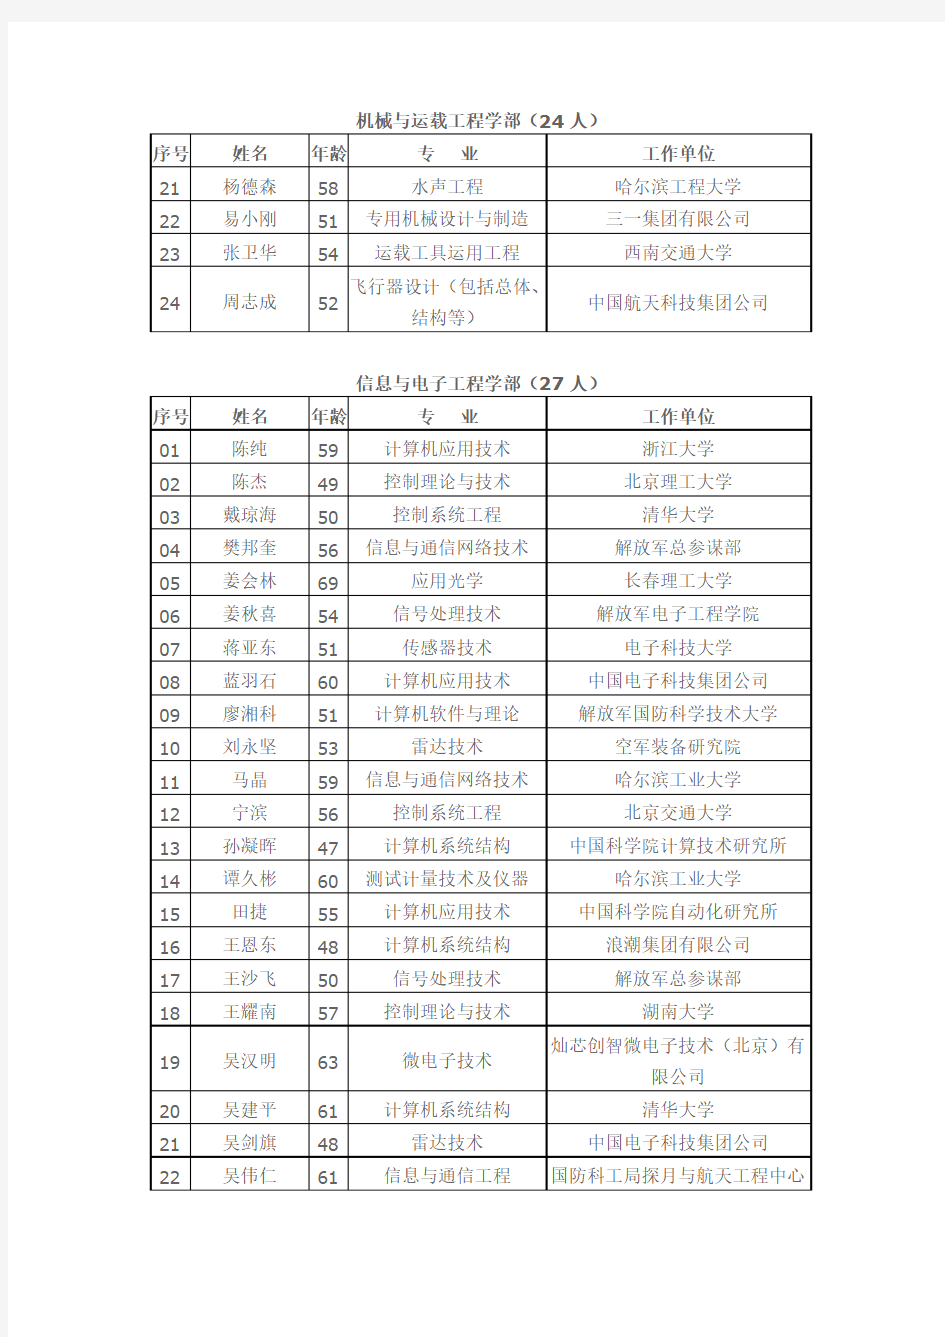 中国工程院2015年度院士增选进入第二轮评审的候选人名单